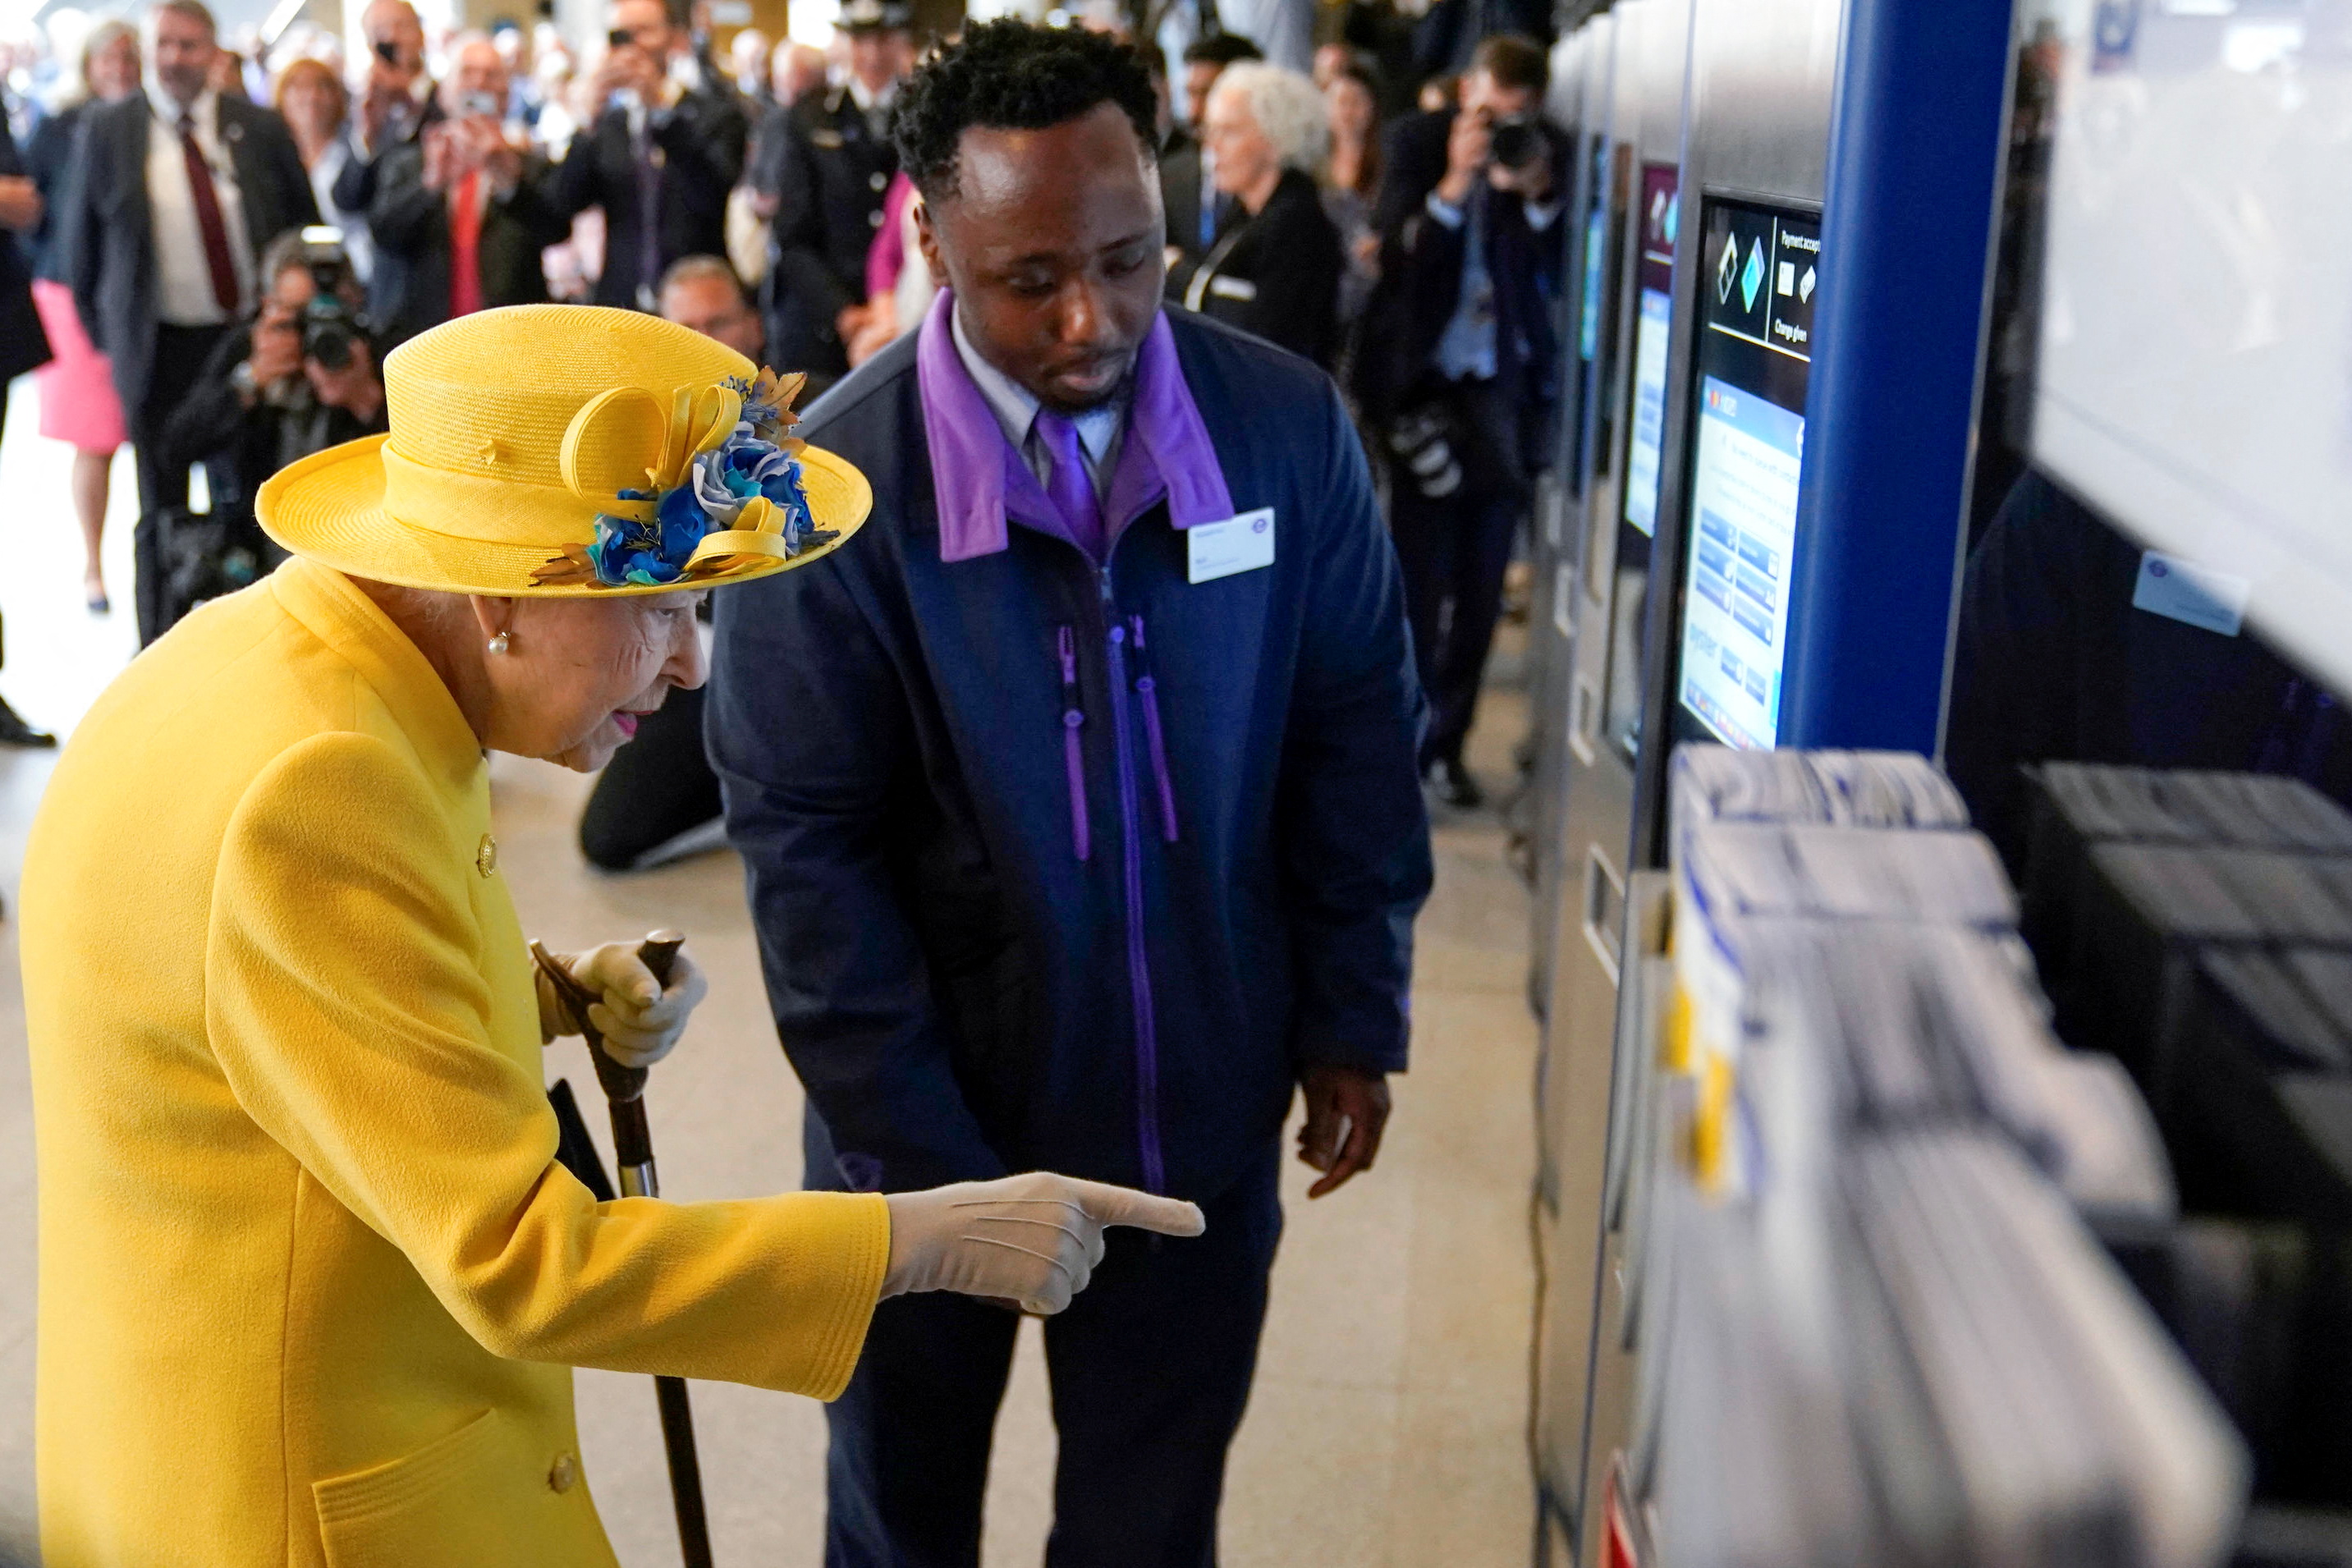 A la reina Isabel de Gran Bretaña se le muestra cómo comprar un boleto. (Andrew Matthews vía REUTERS)